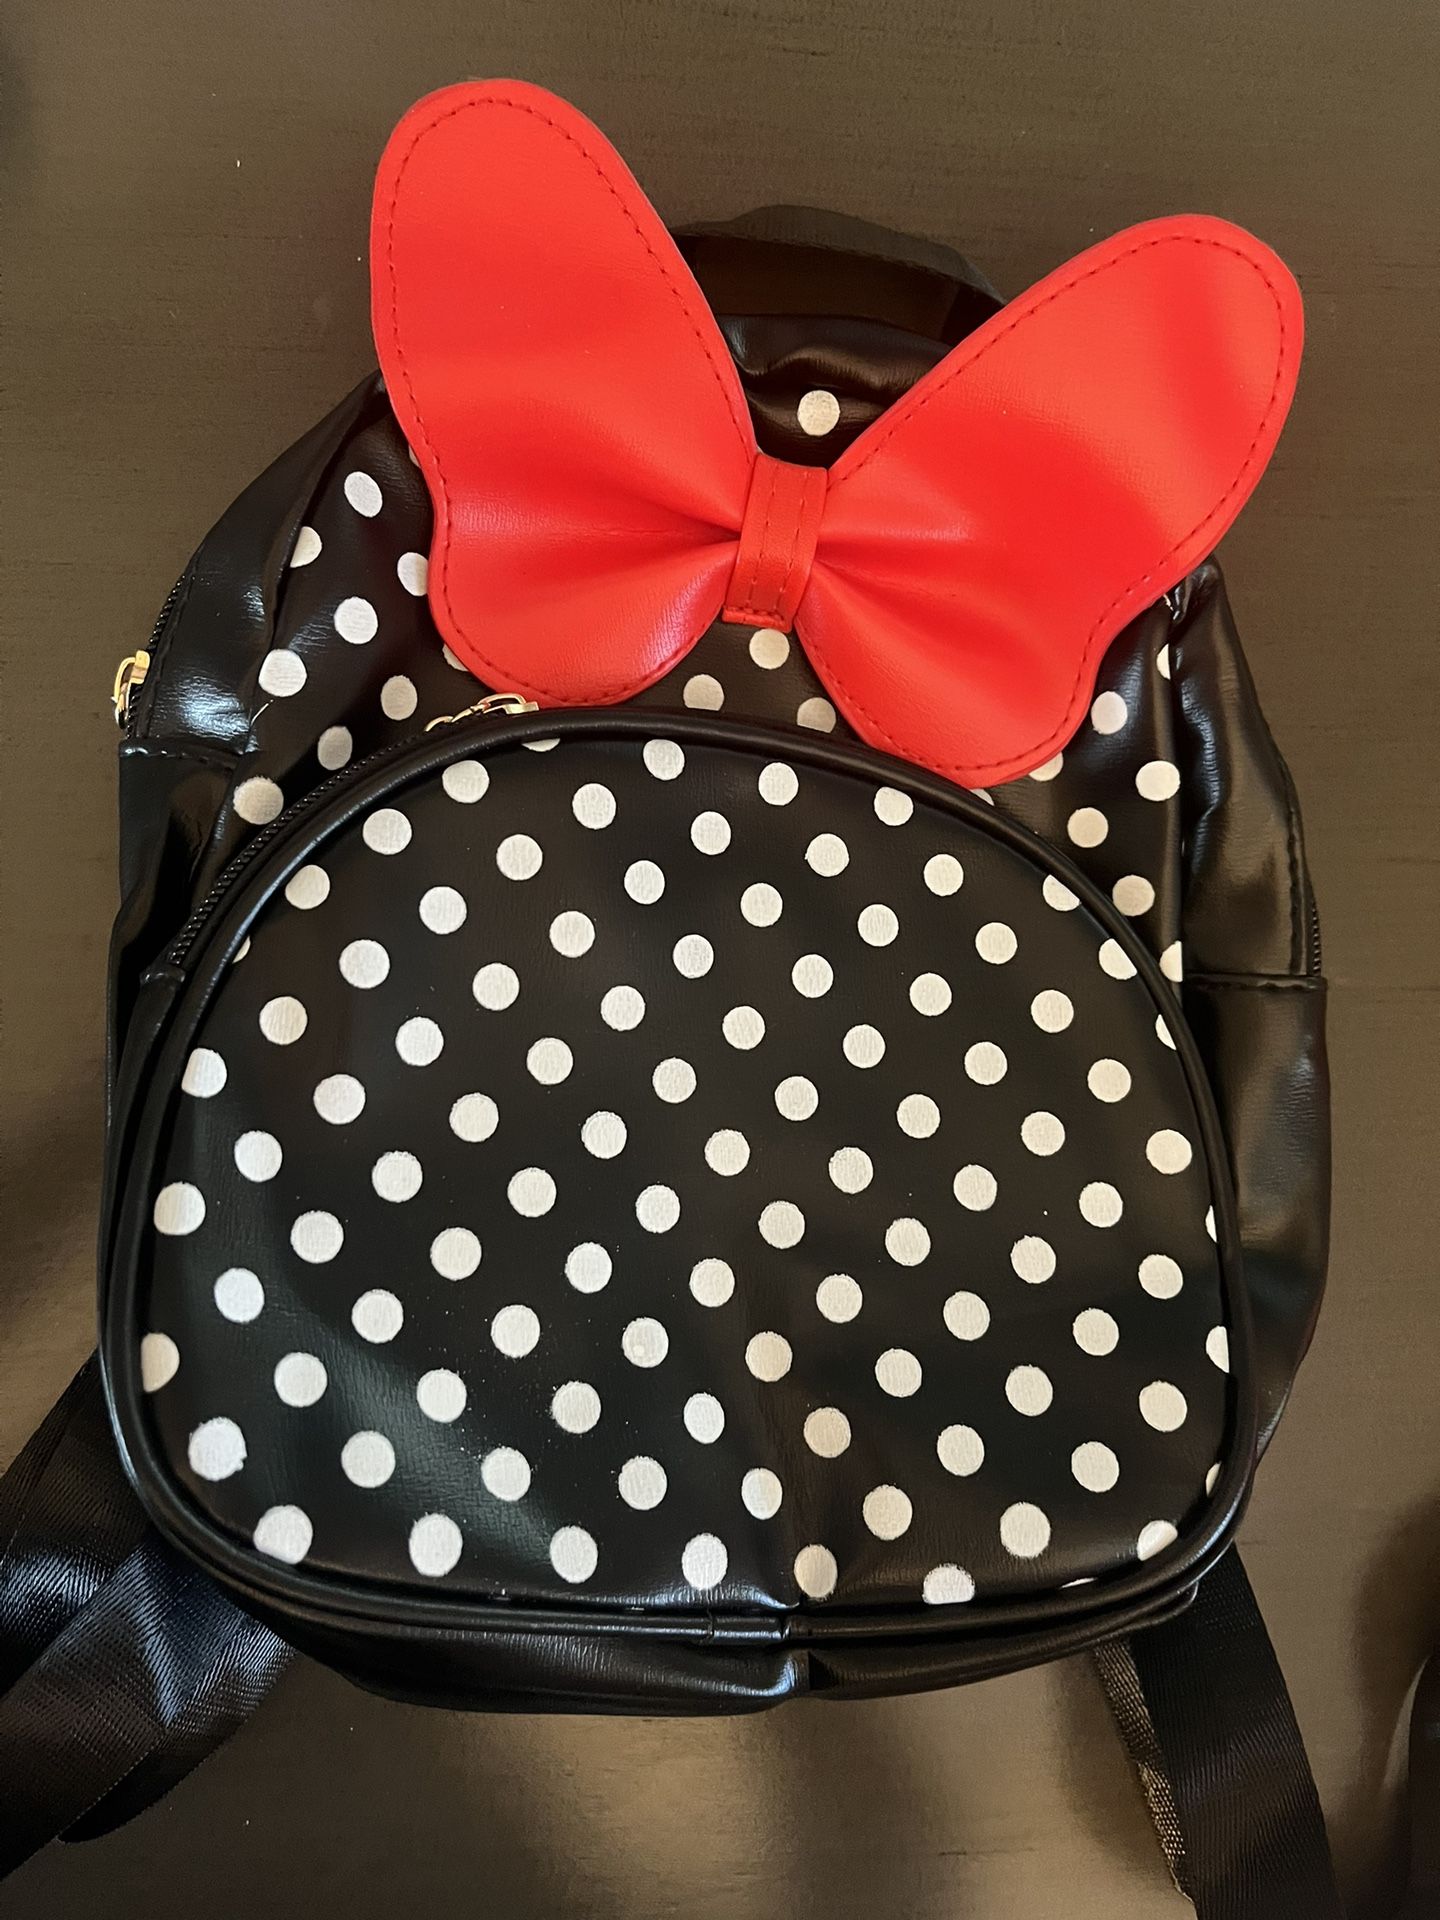 Minnie Backpack 